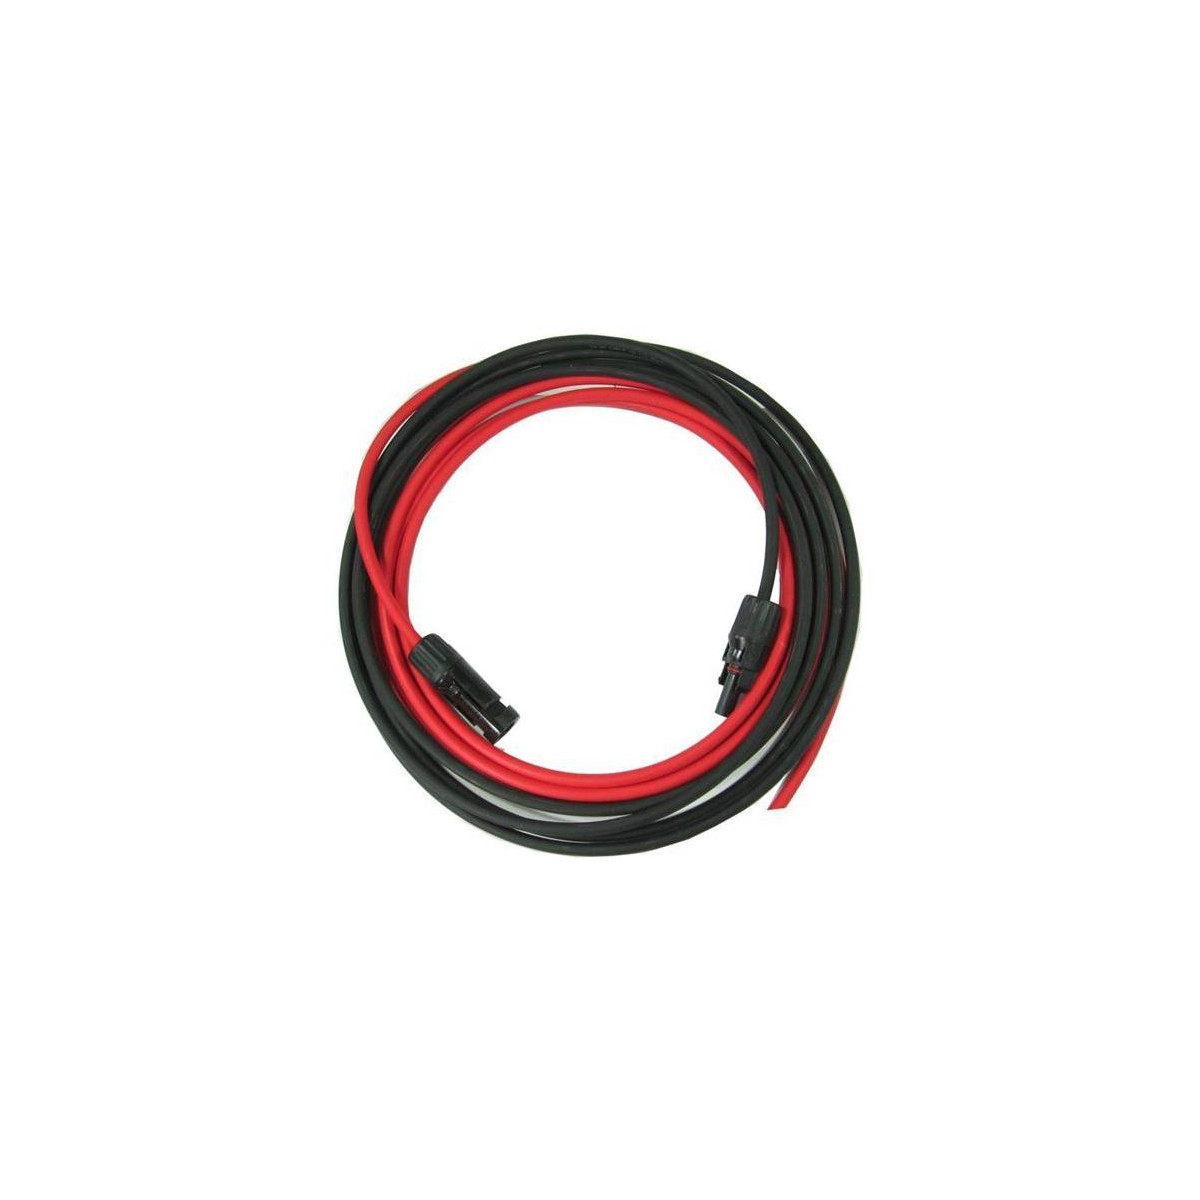 More about Solární kabel 6mm2, červený+černý s konektory MC4, 20m